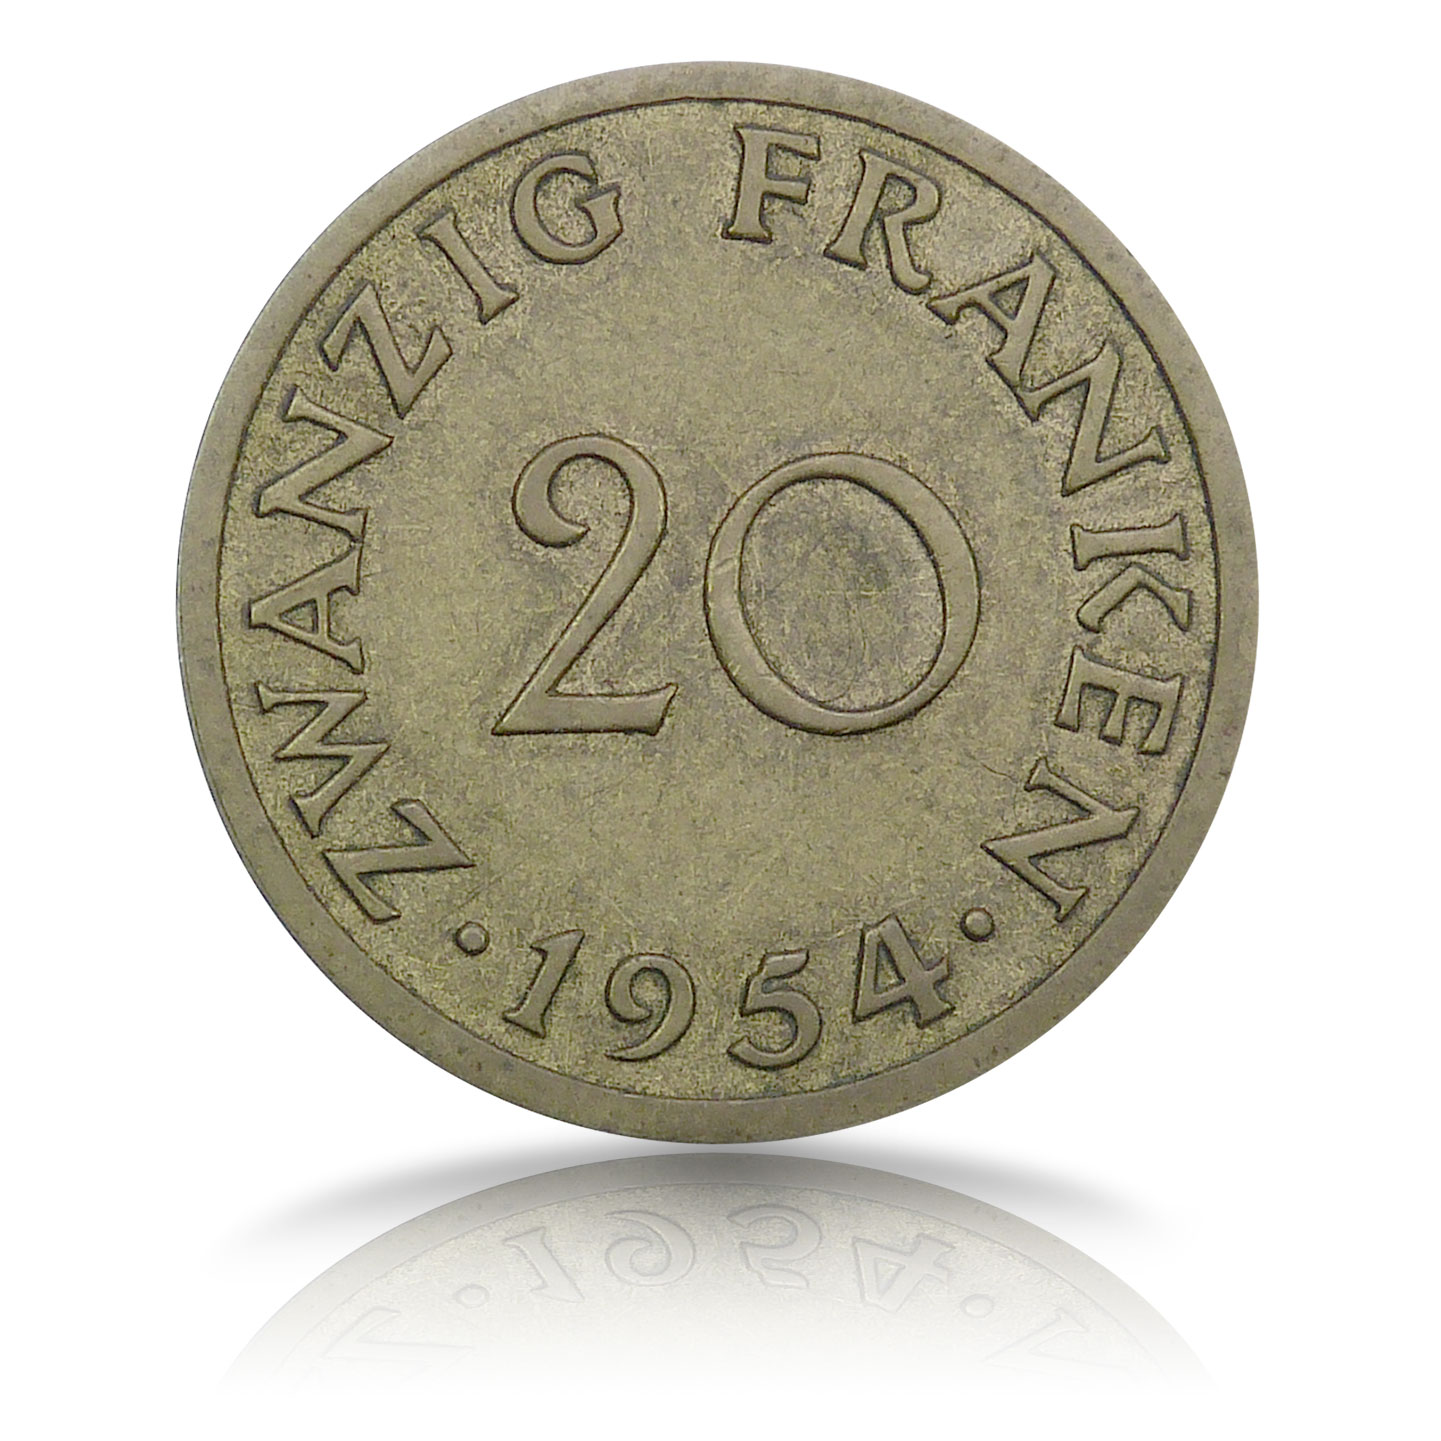 20-Saar-Franken